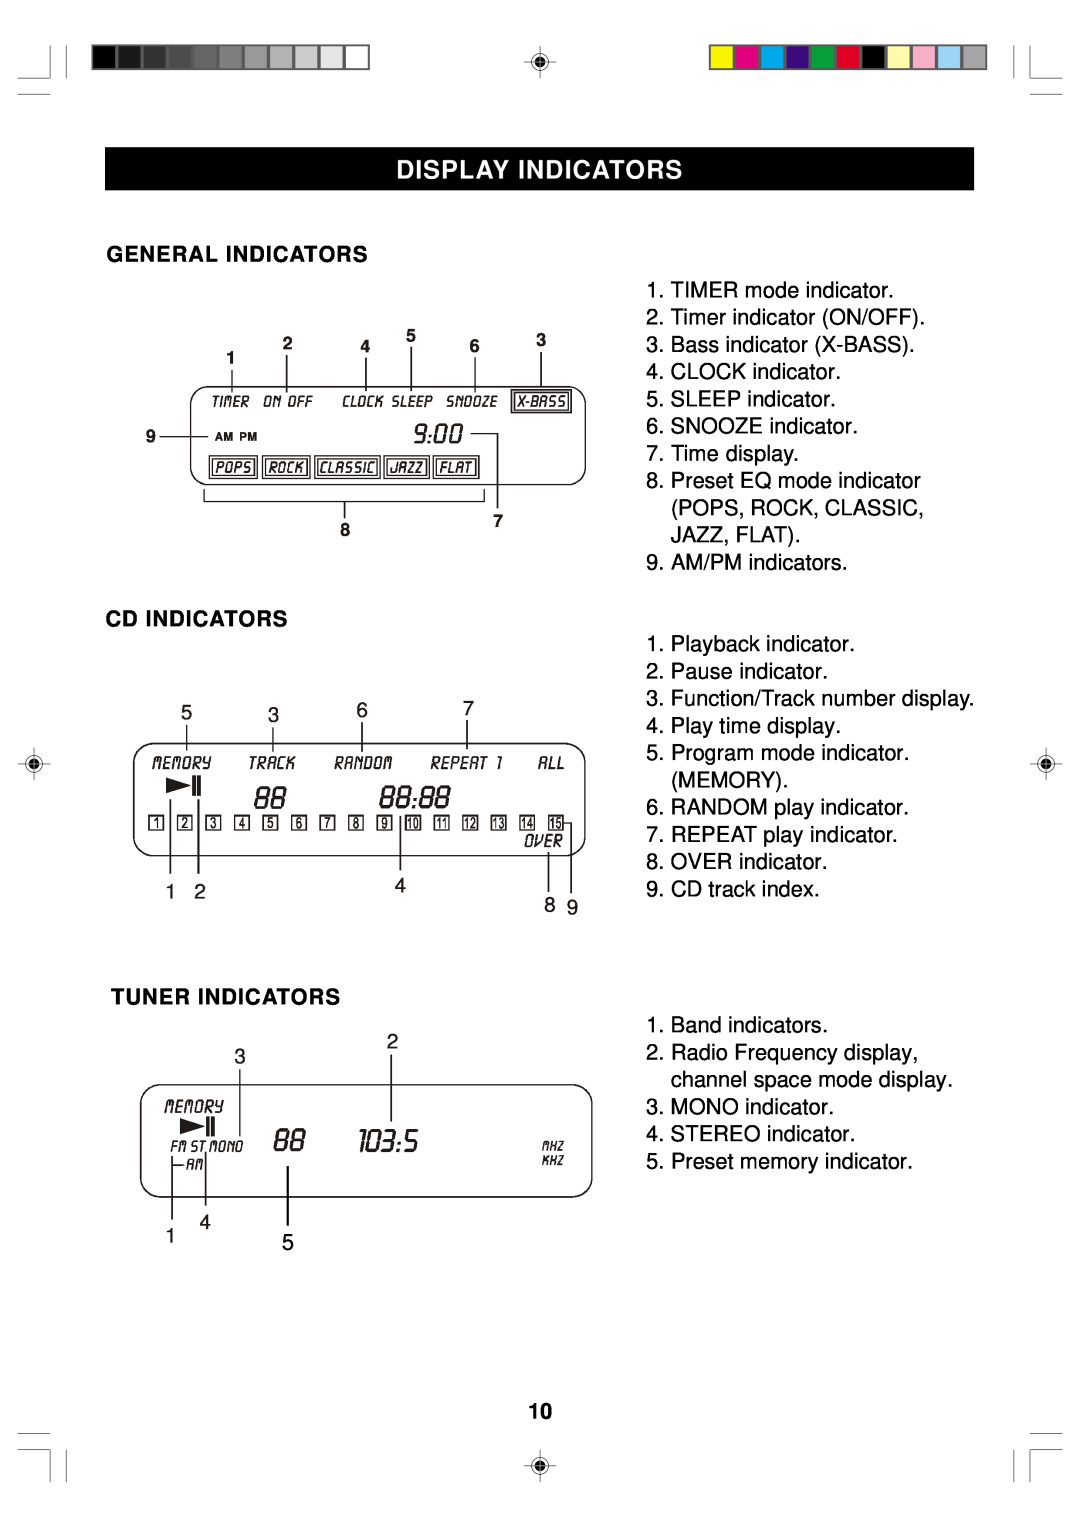 Emerson ES1 owner manual Display Indicators, General Indicators, Cd Indicators, Tuner Indicators 